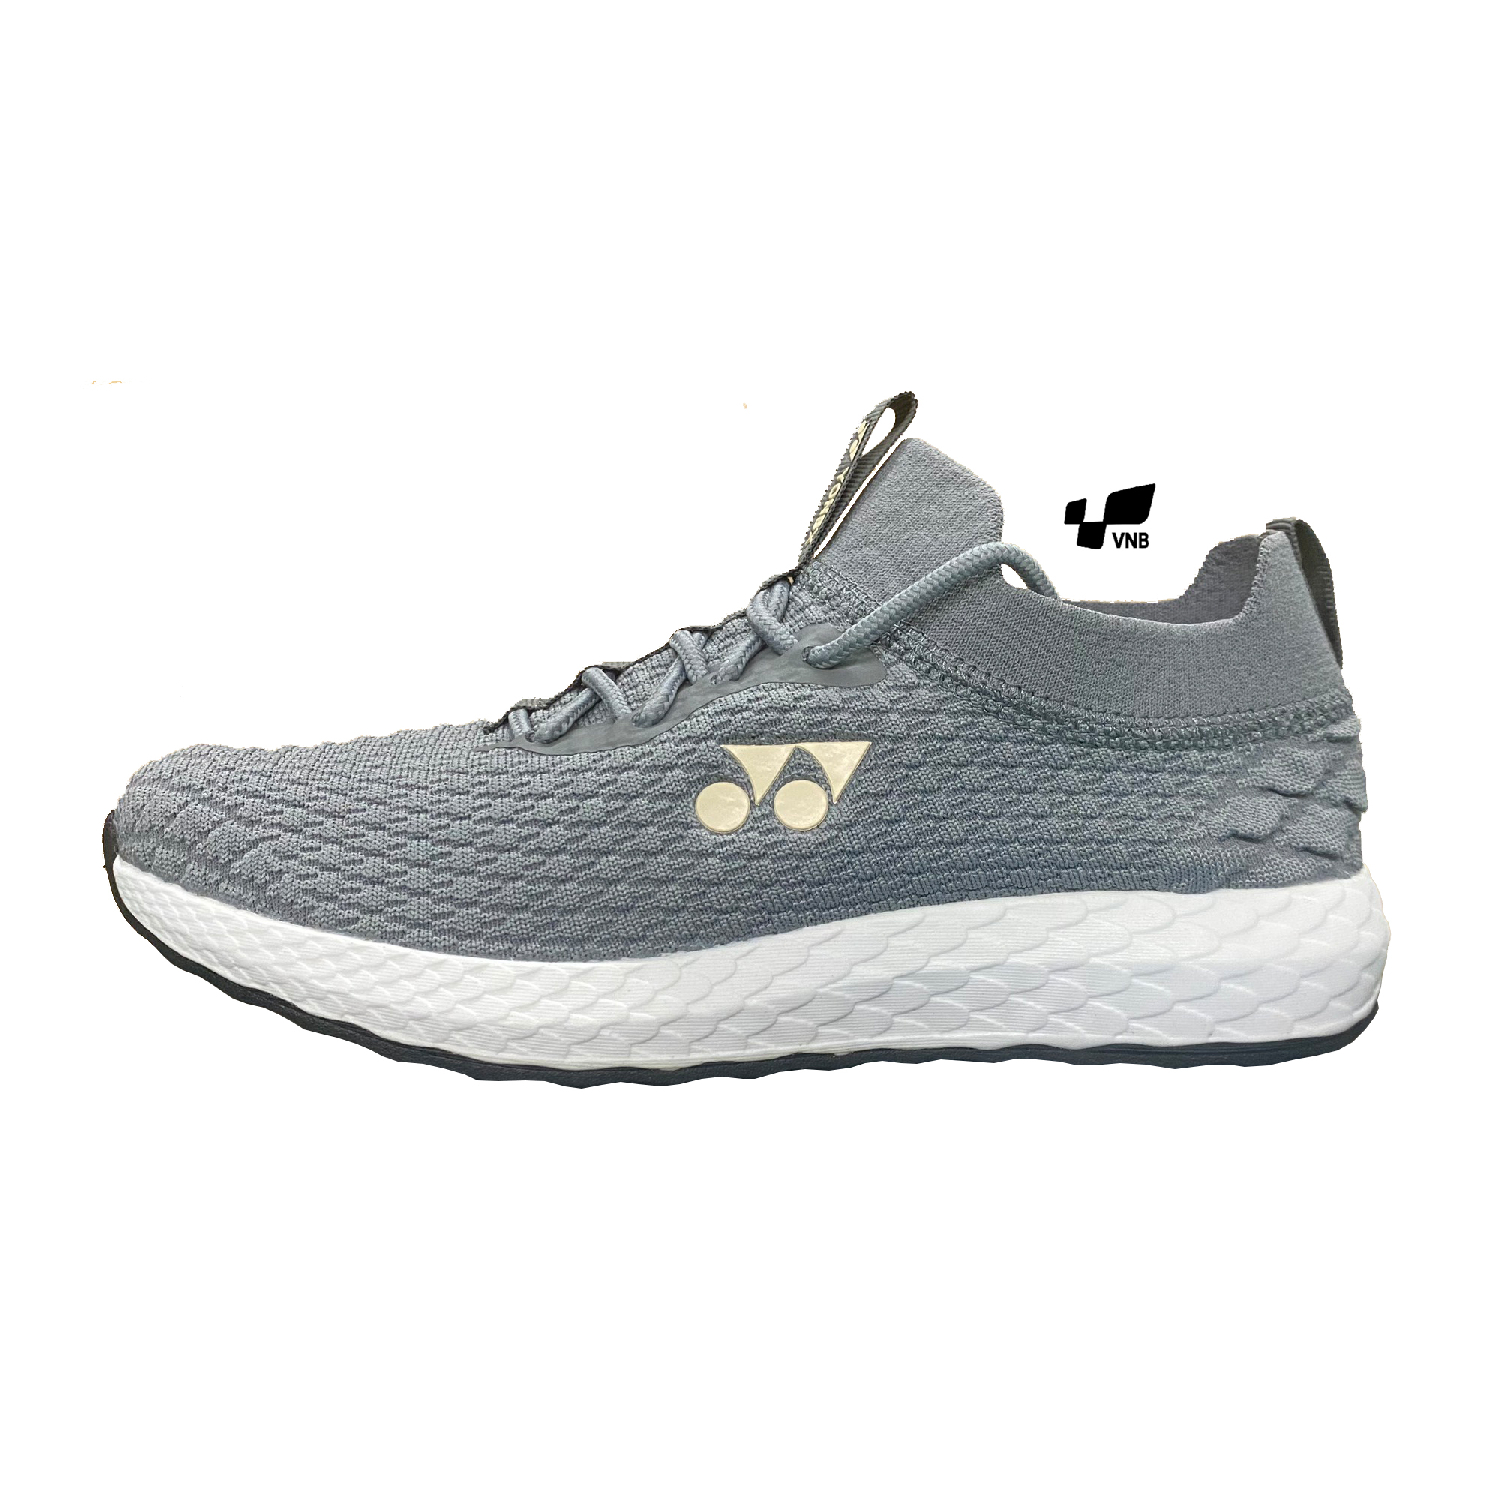 Giày Running Yonex SHR 8006 Verona - Grey chính hãng